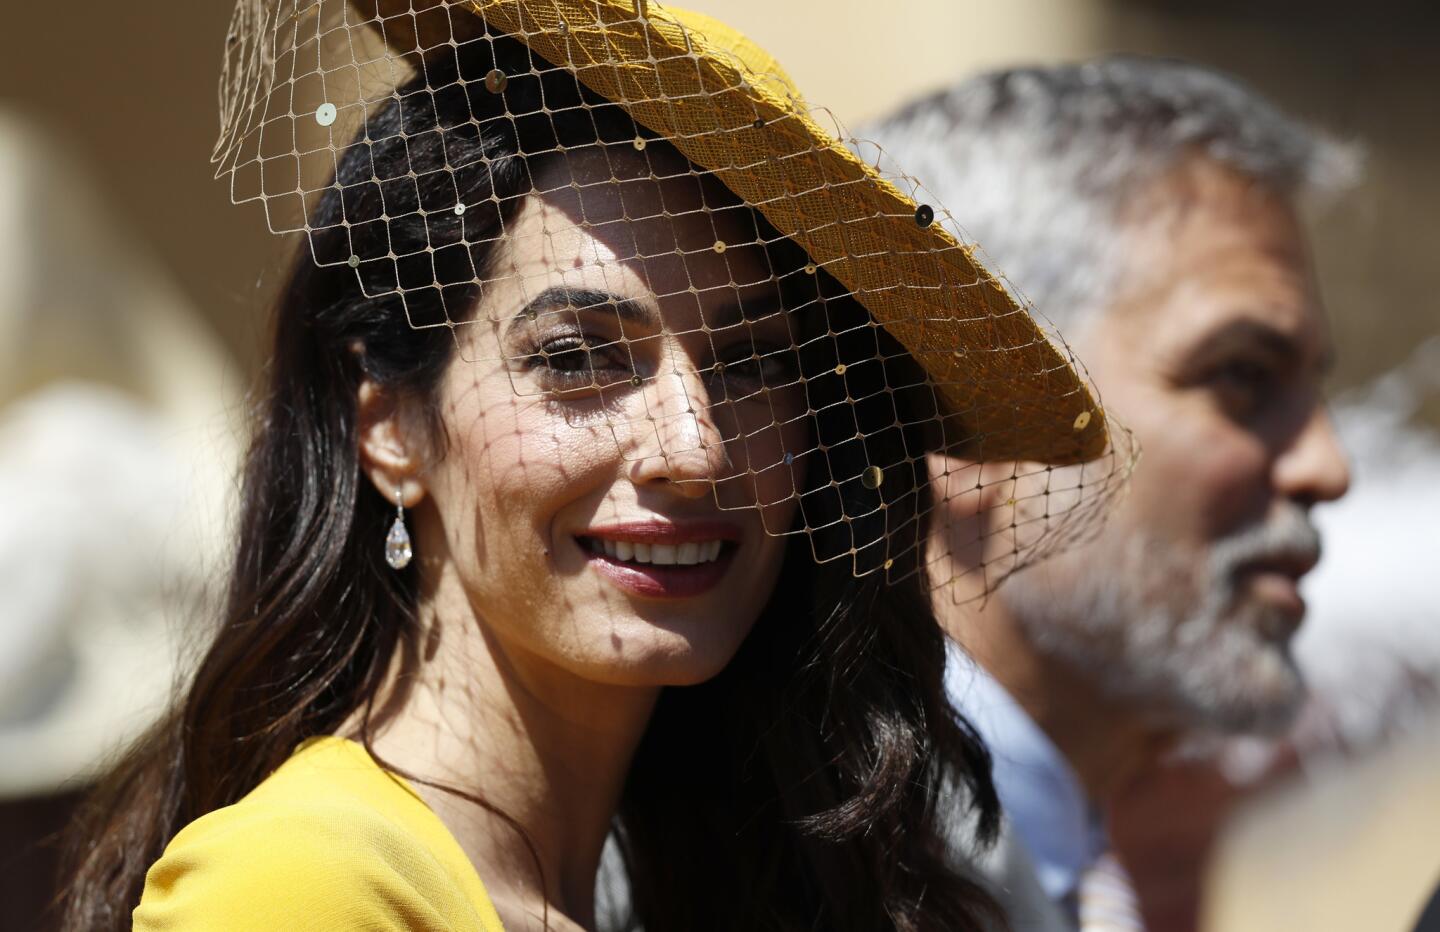 Royal wedding 2018 hats and fascinators